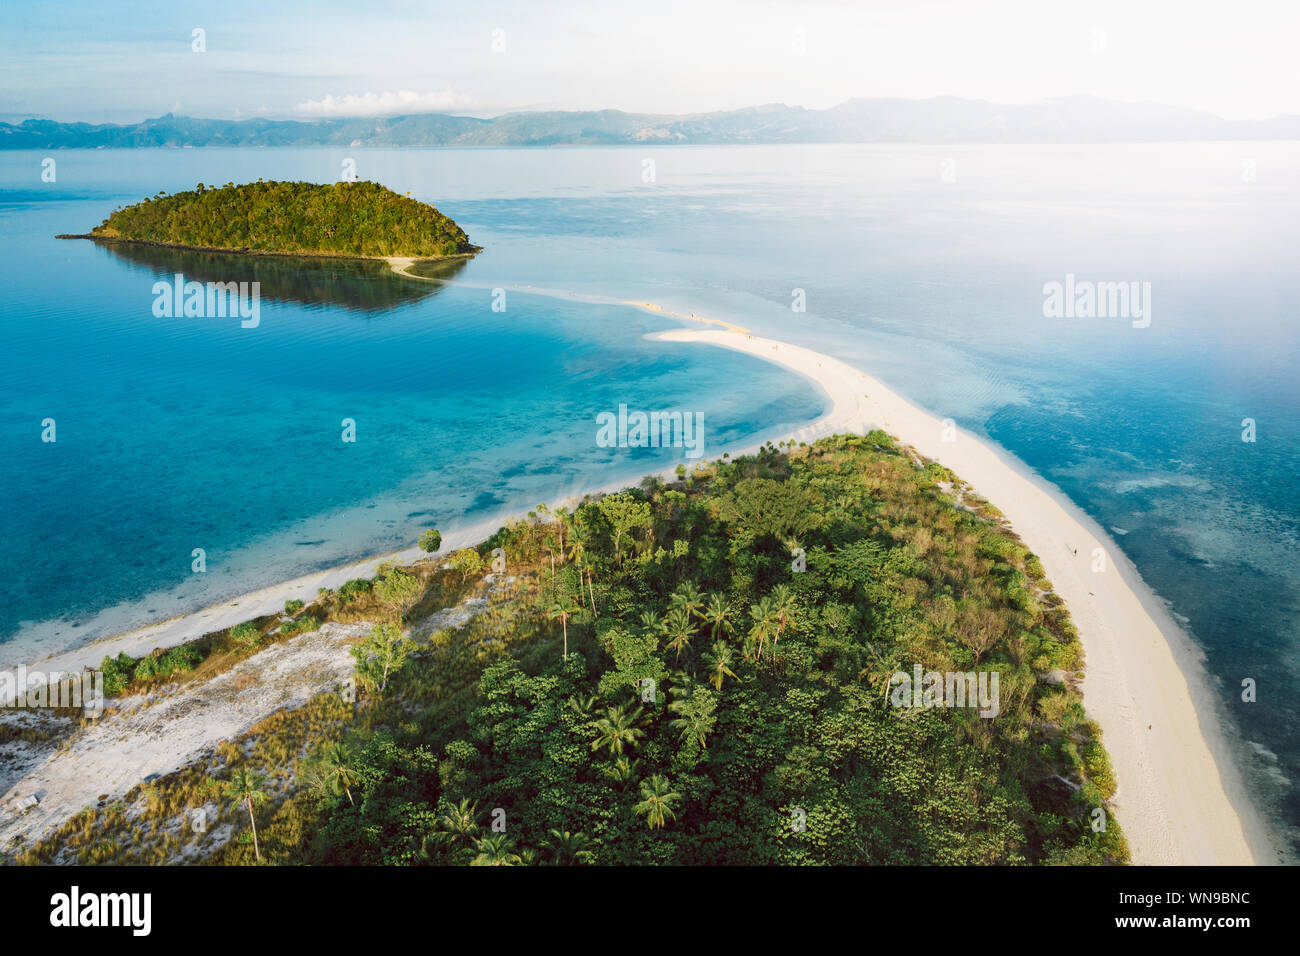 Amazing Bon Bon beach on Romblon island, Philippines Stock Photo